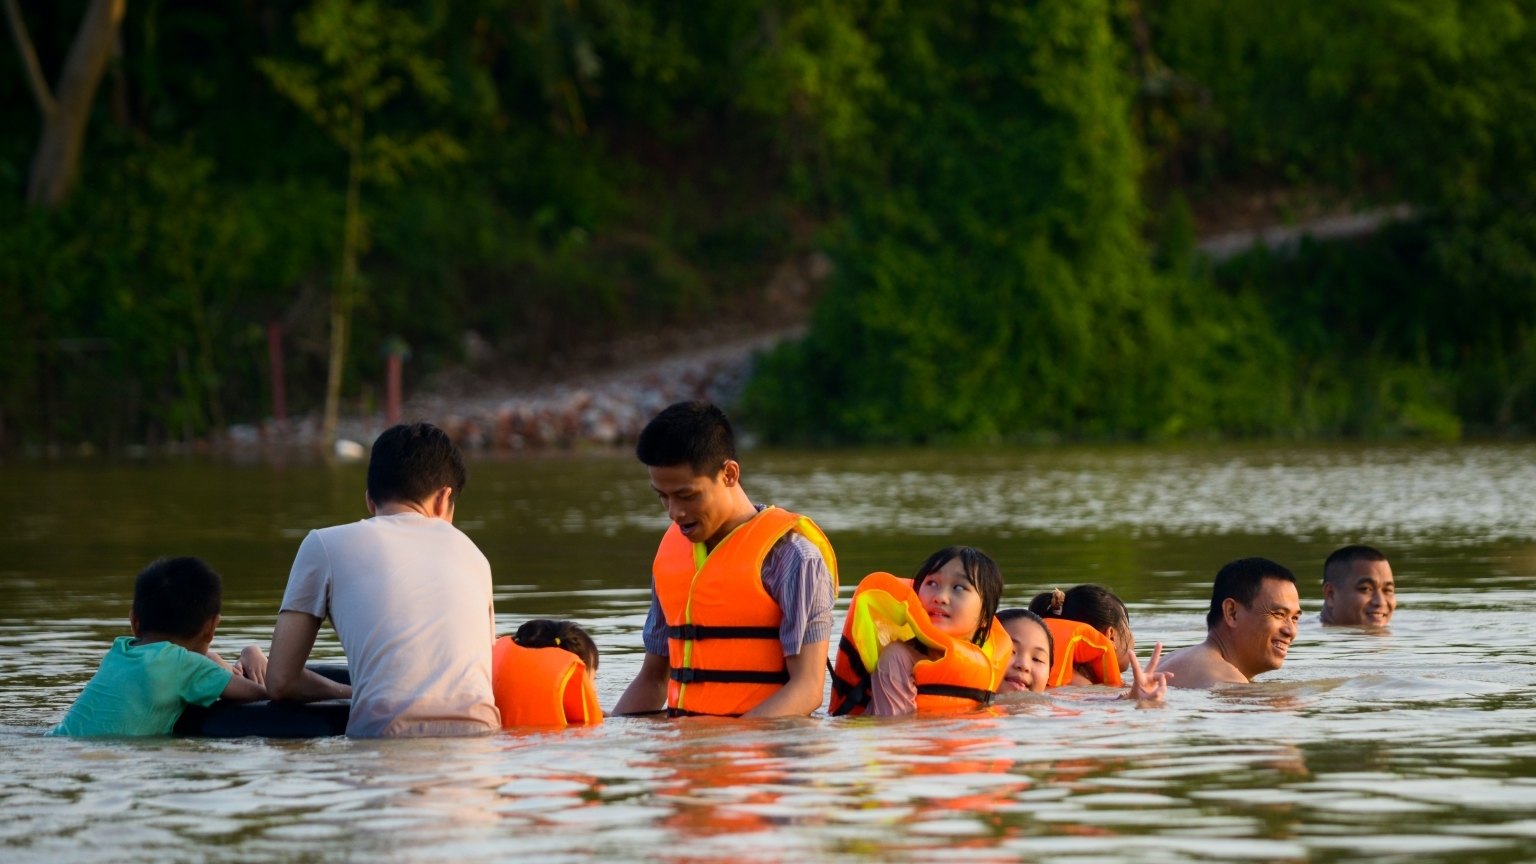 Tắm sông "giải nhiệt" mùa hè: cần lưu ý đến những quy tắc an toàn